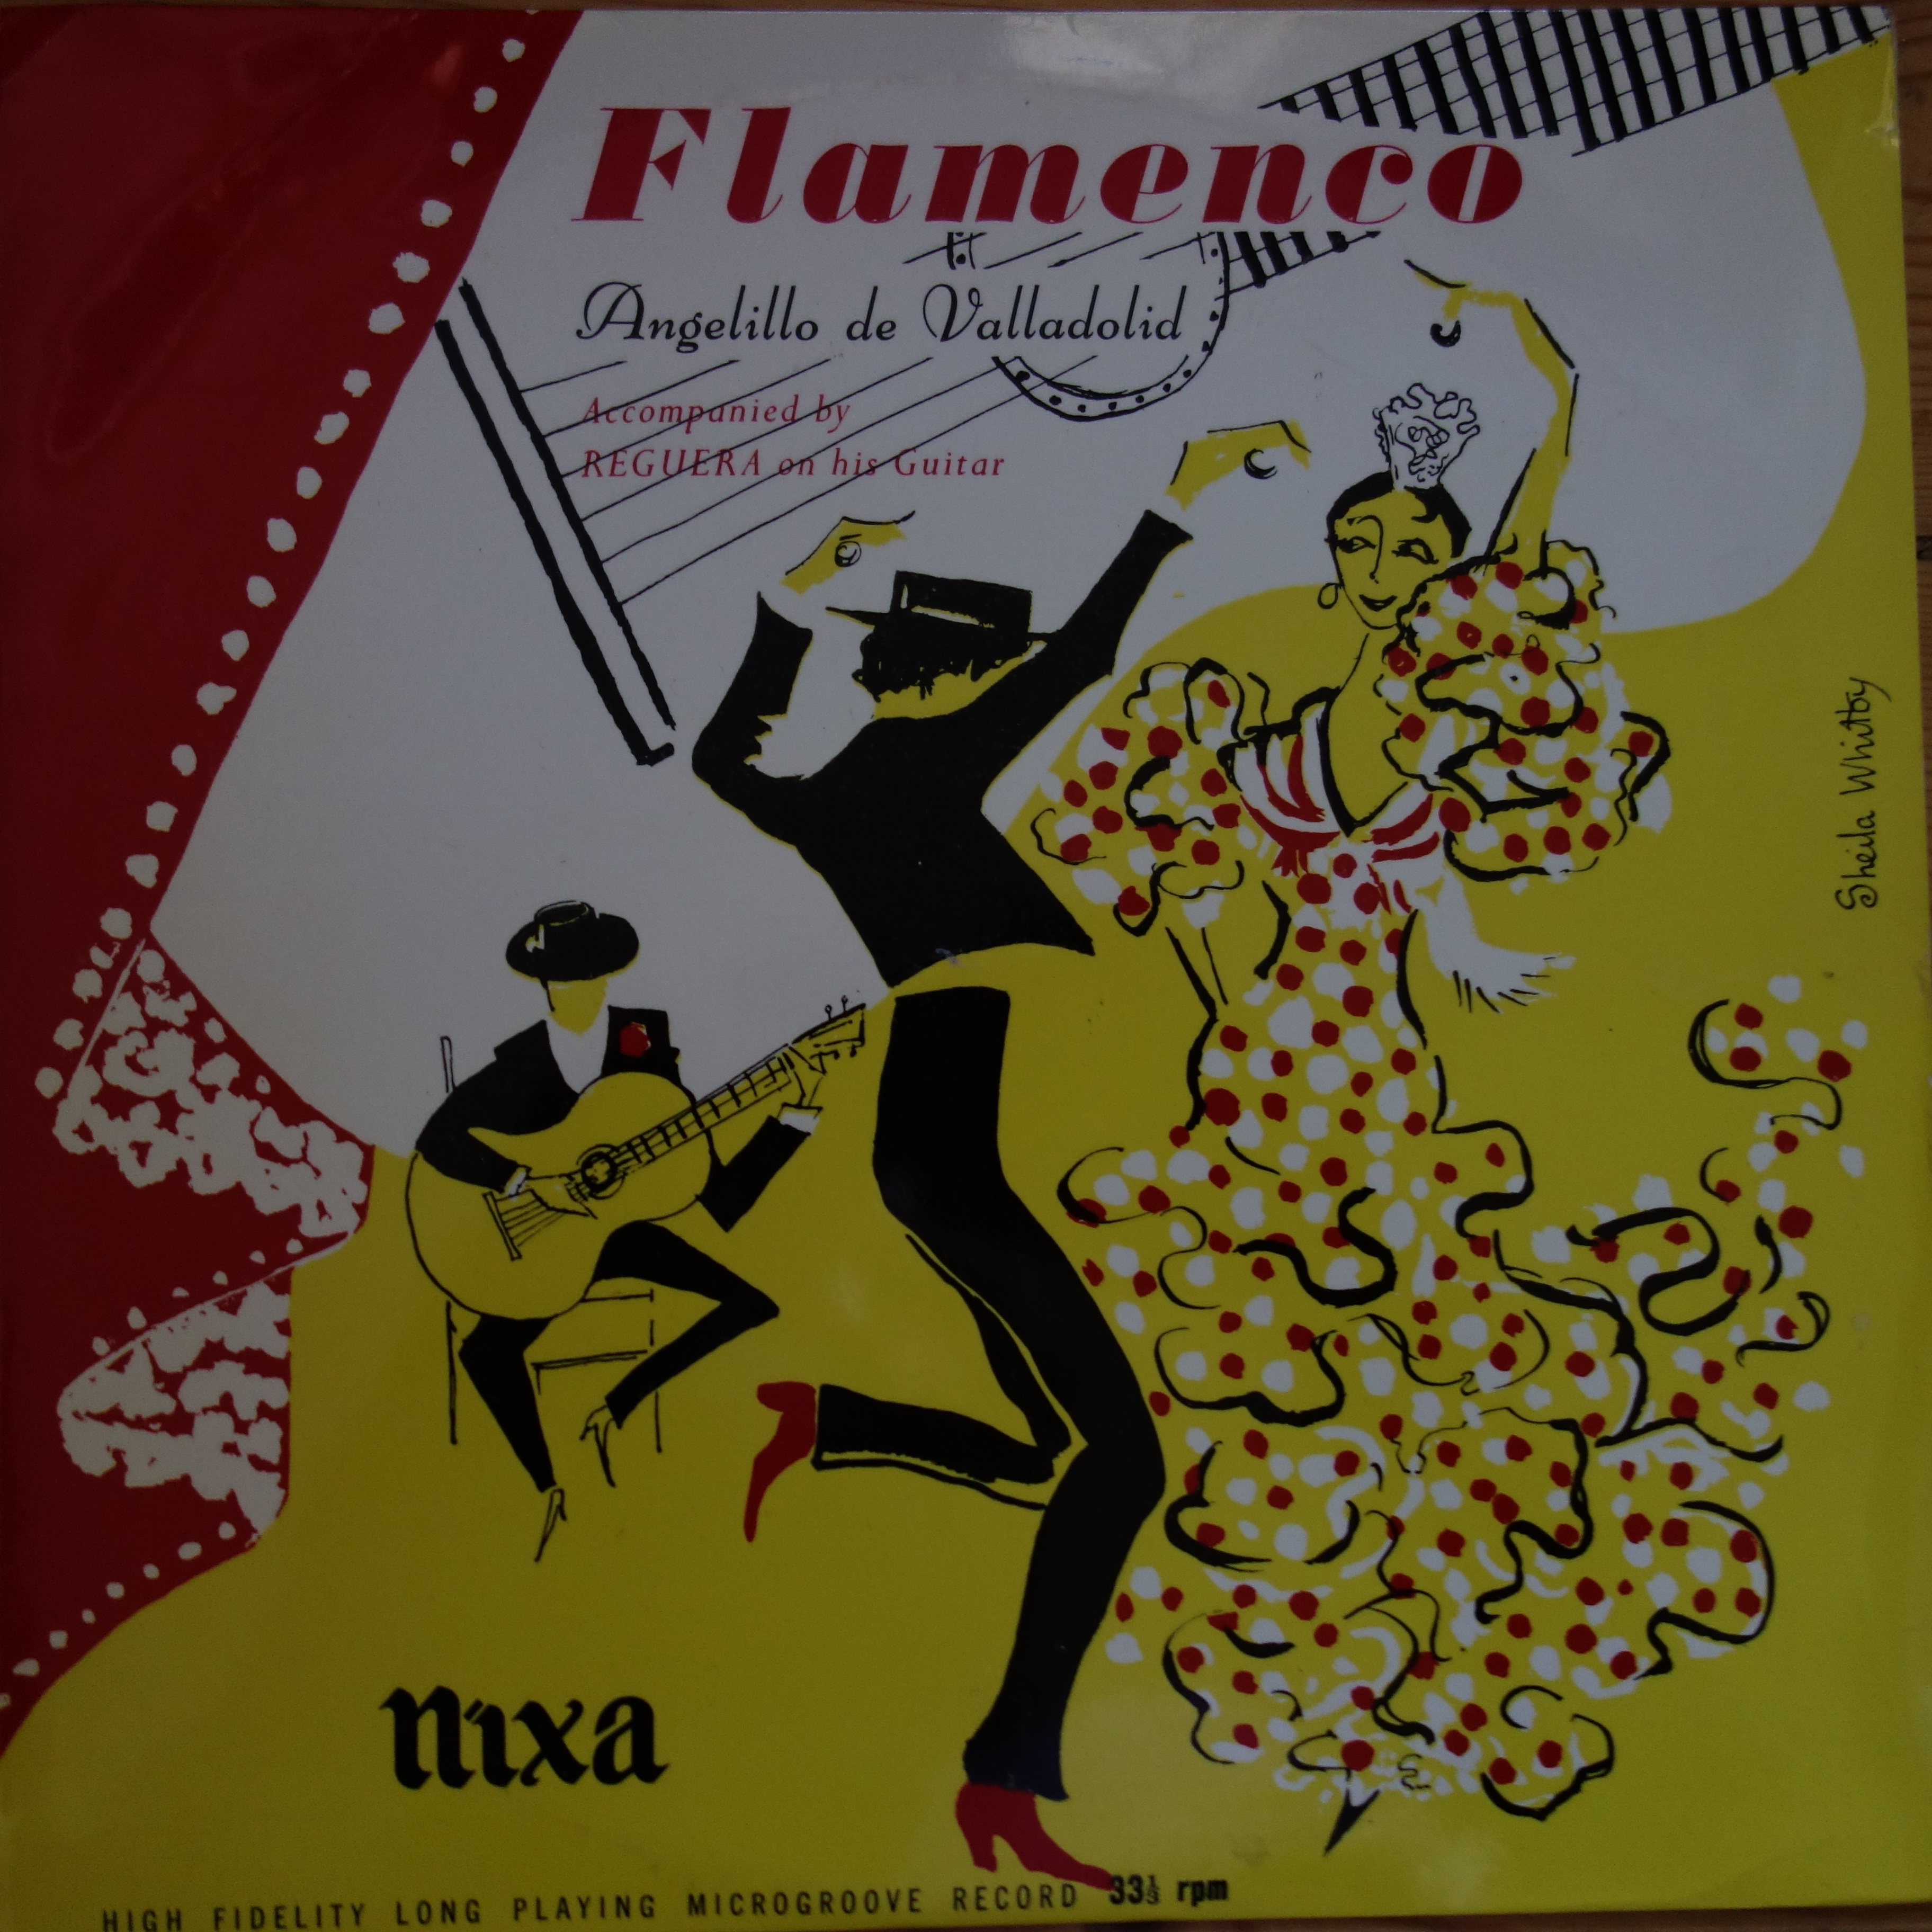 NPT 19005 Flamenco Angelillo de Valladolid